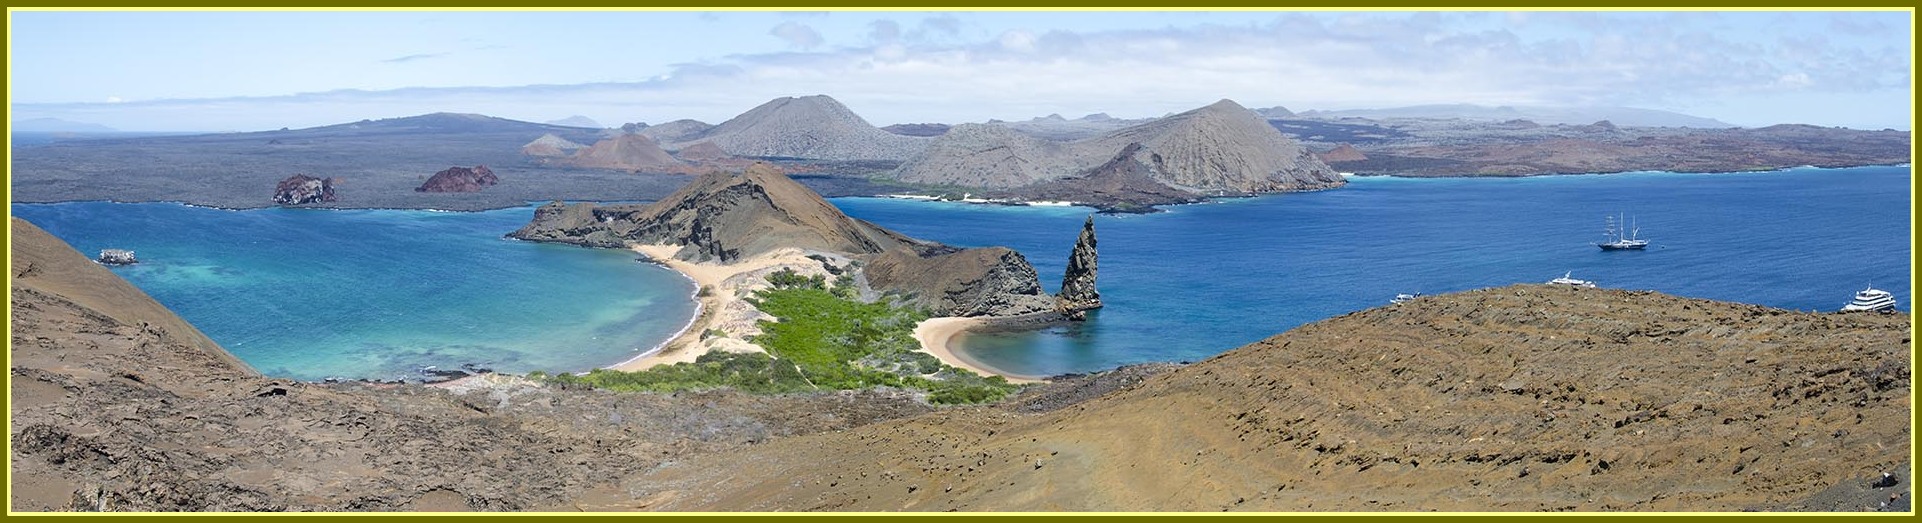 Ecuador - islas Galápagos - isla Bartolomé